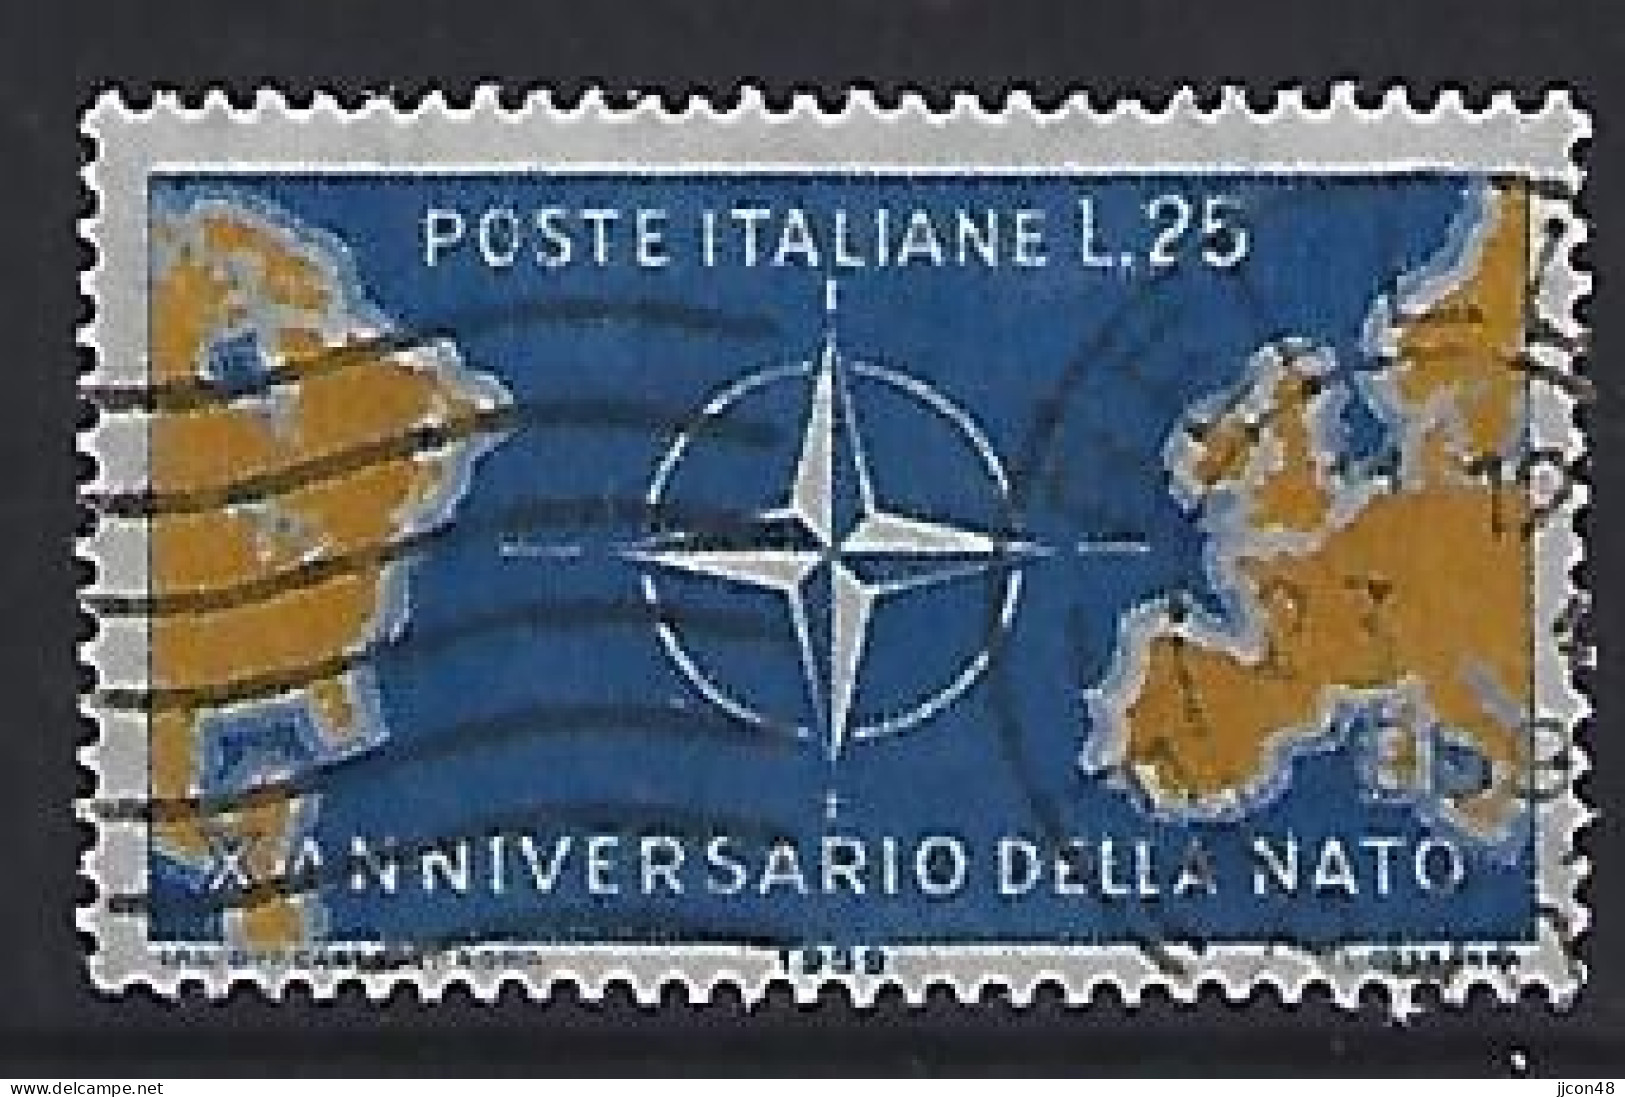 Italy 1959  10 Jahre NATO  (o) Mi.1032 - 1946-60: Gebraucht